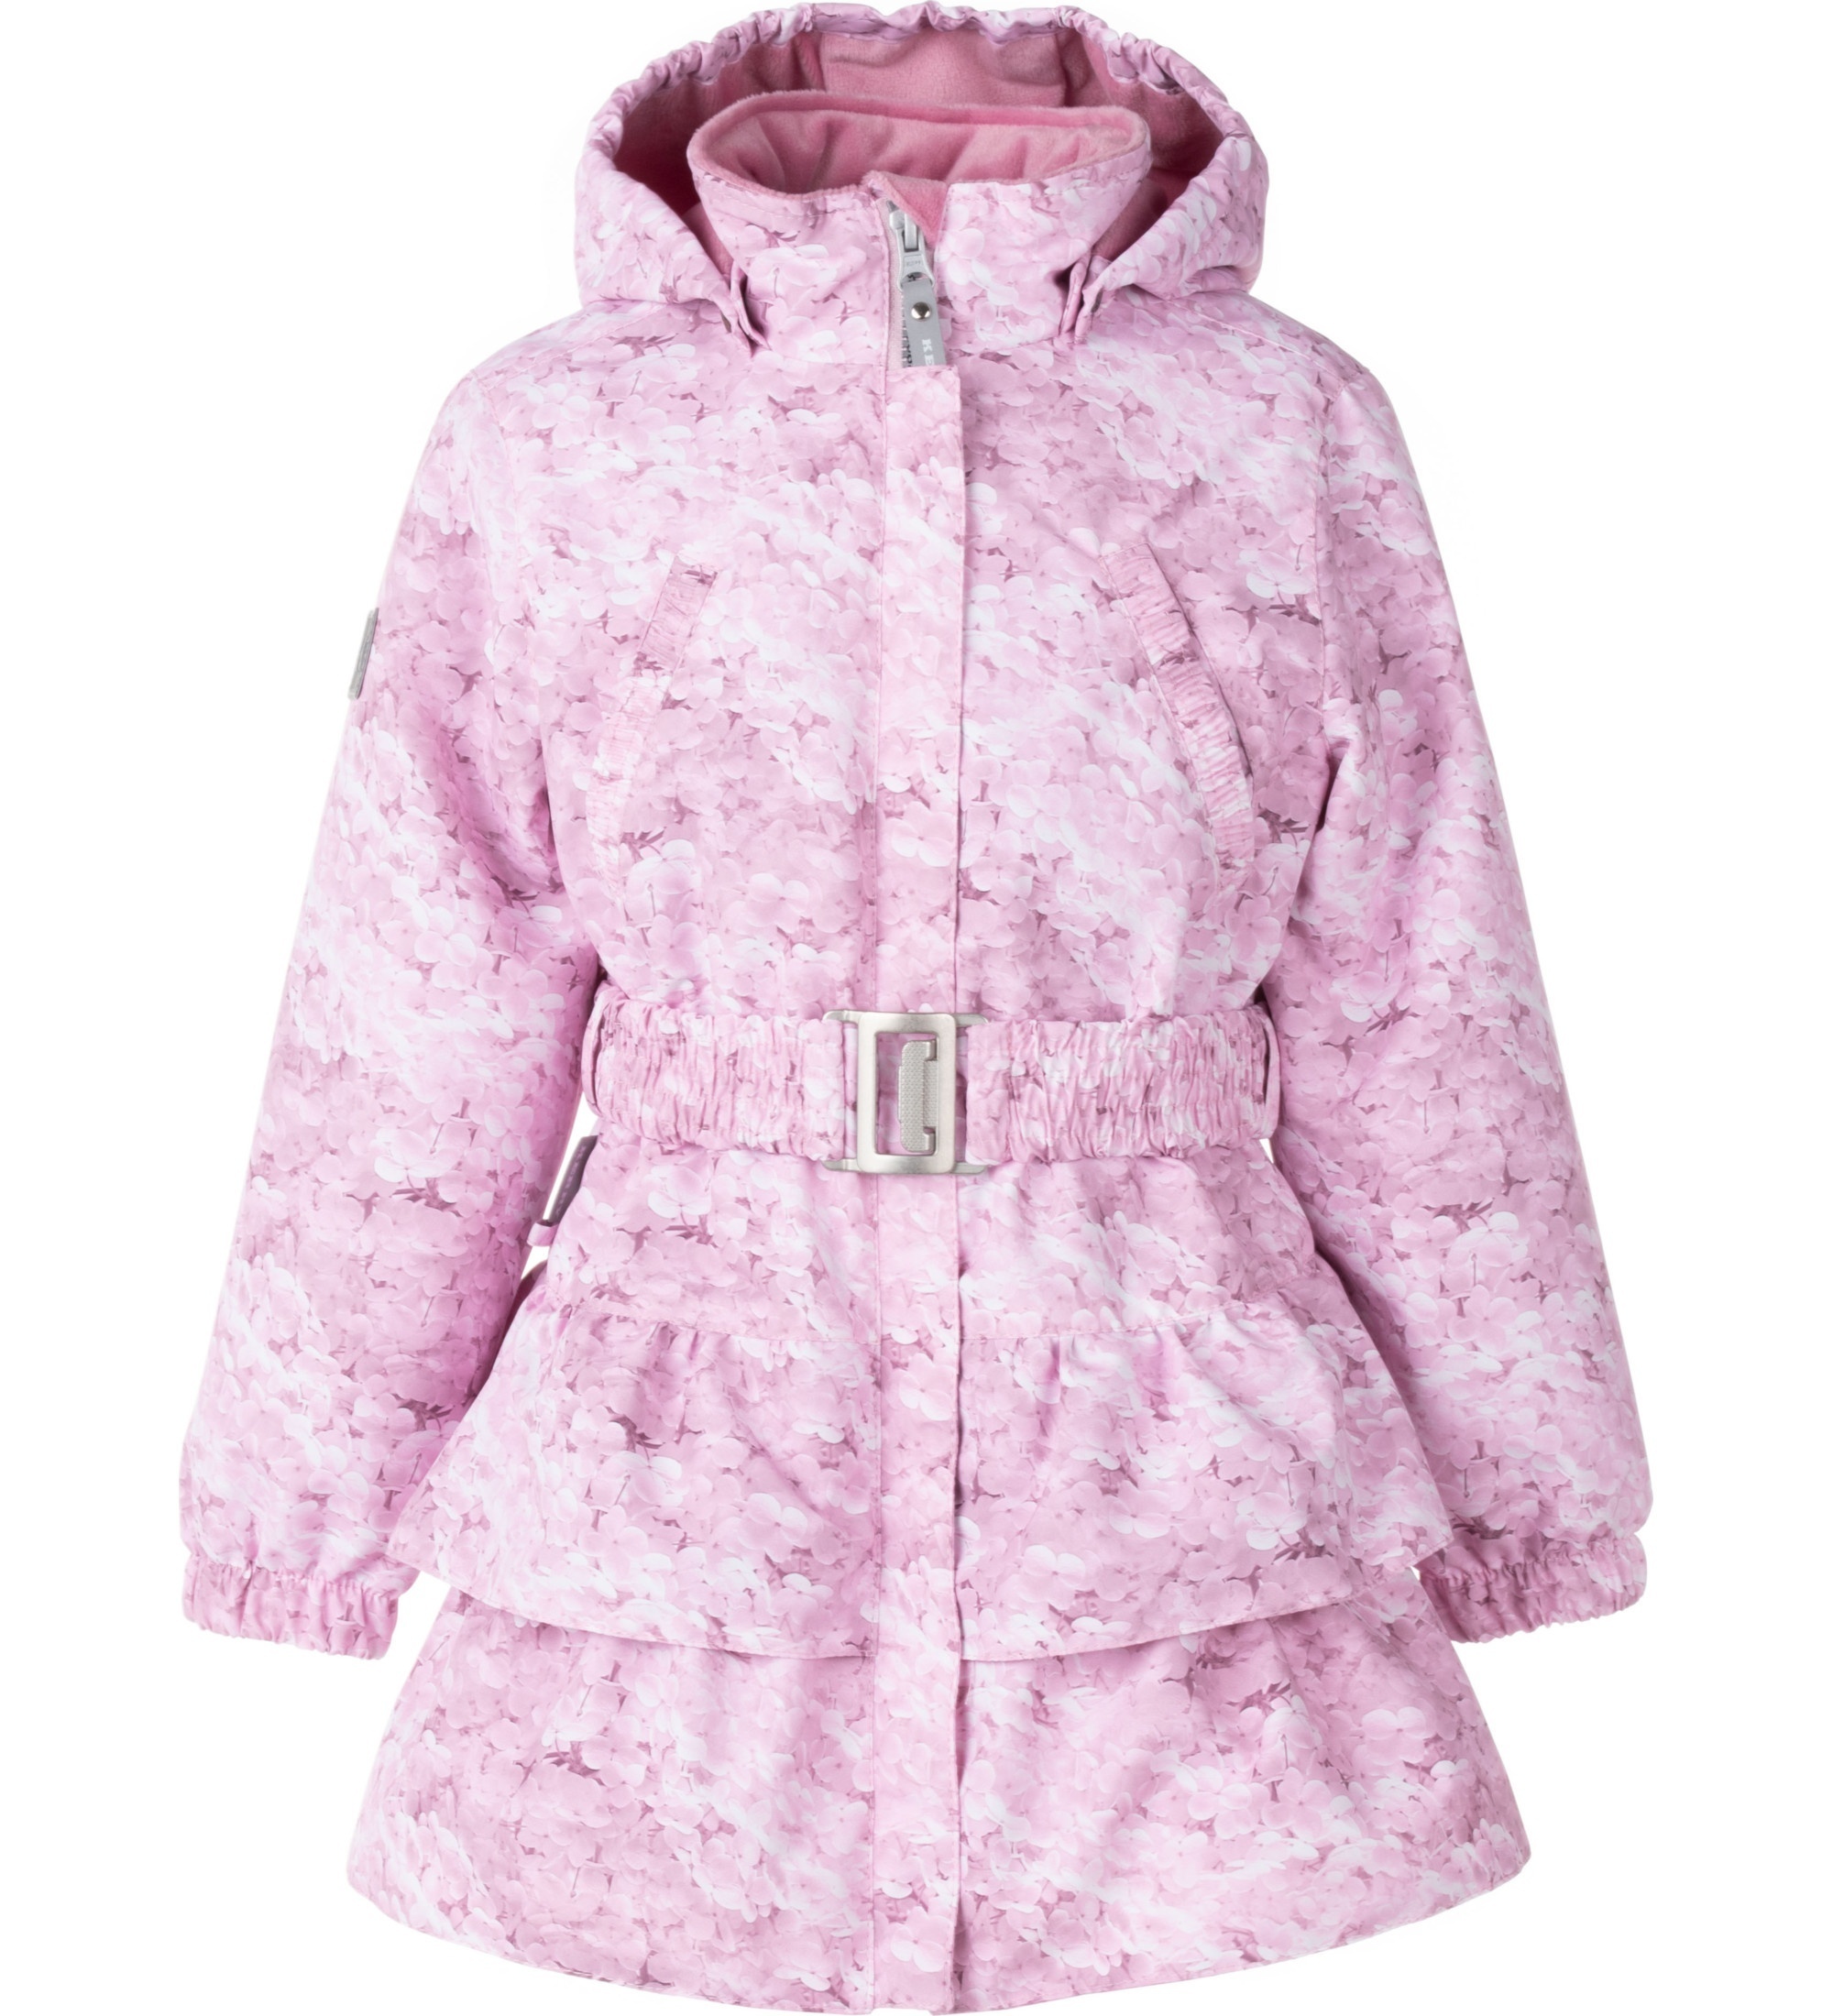 Пальто детское KERRY POLLY, розовый принт, 128